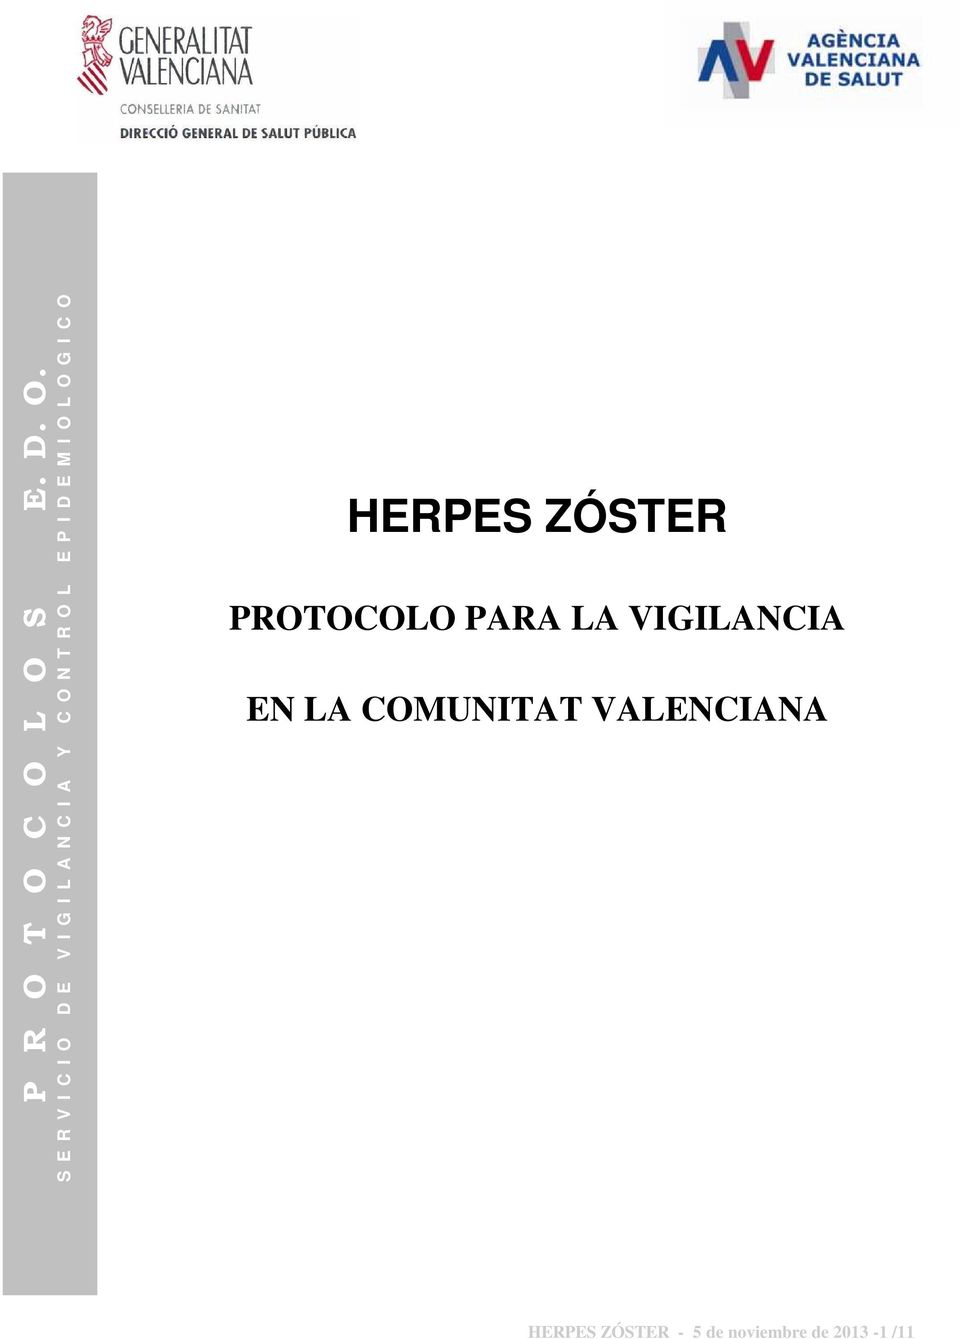 COMUNITAT VALENCIANA HERPES